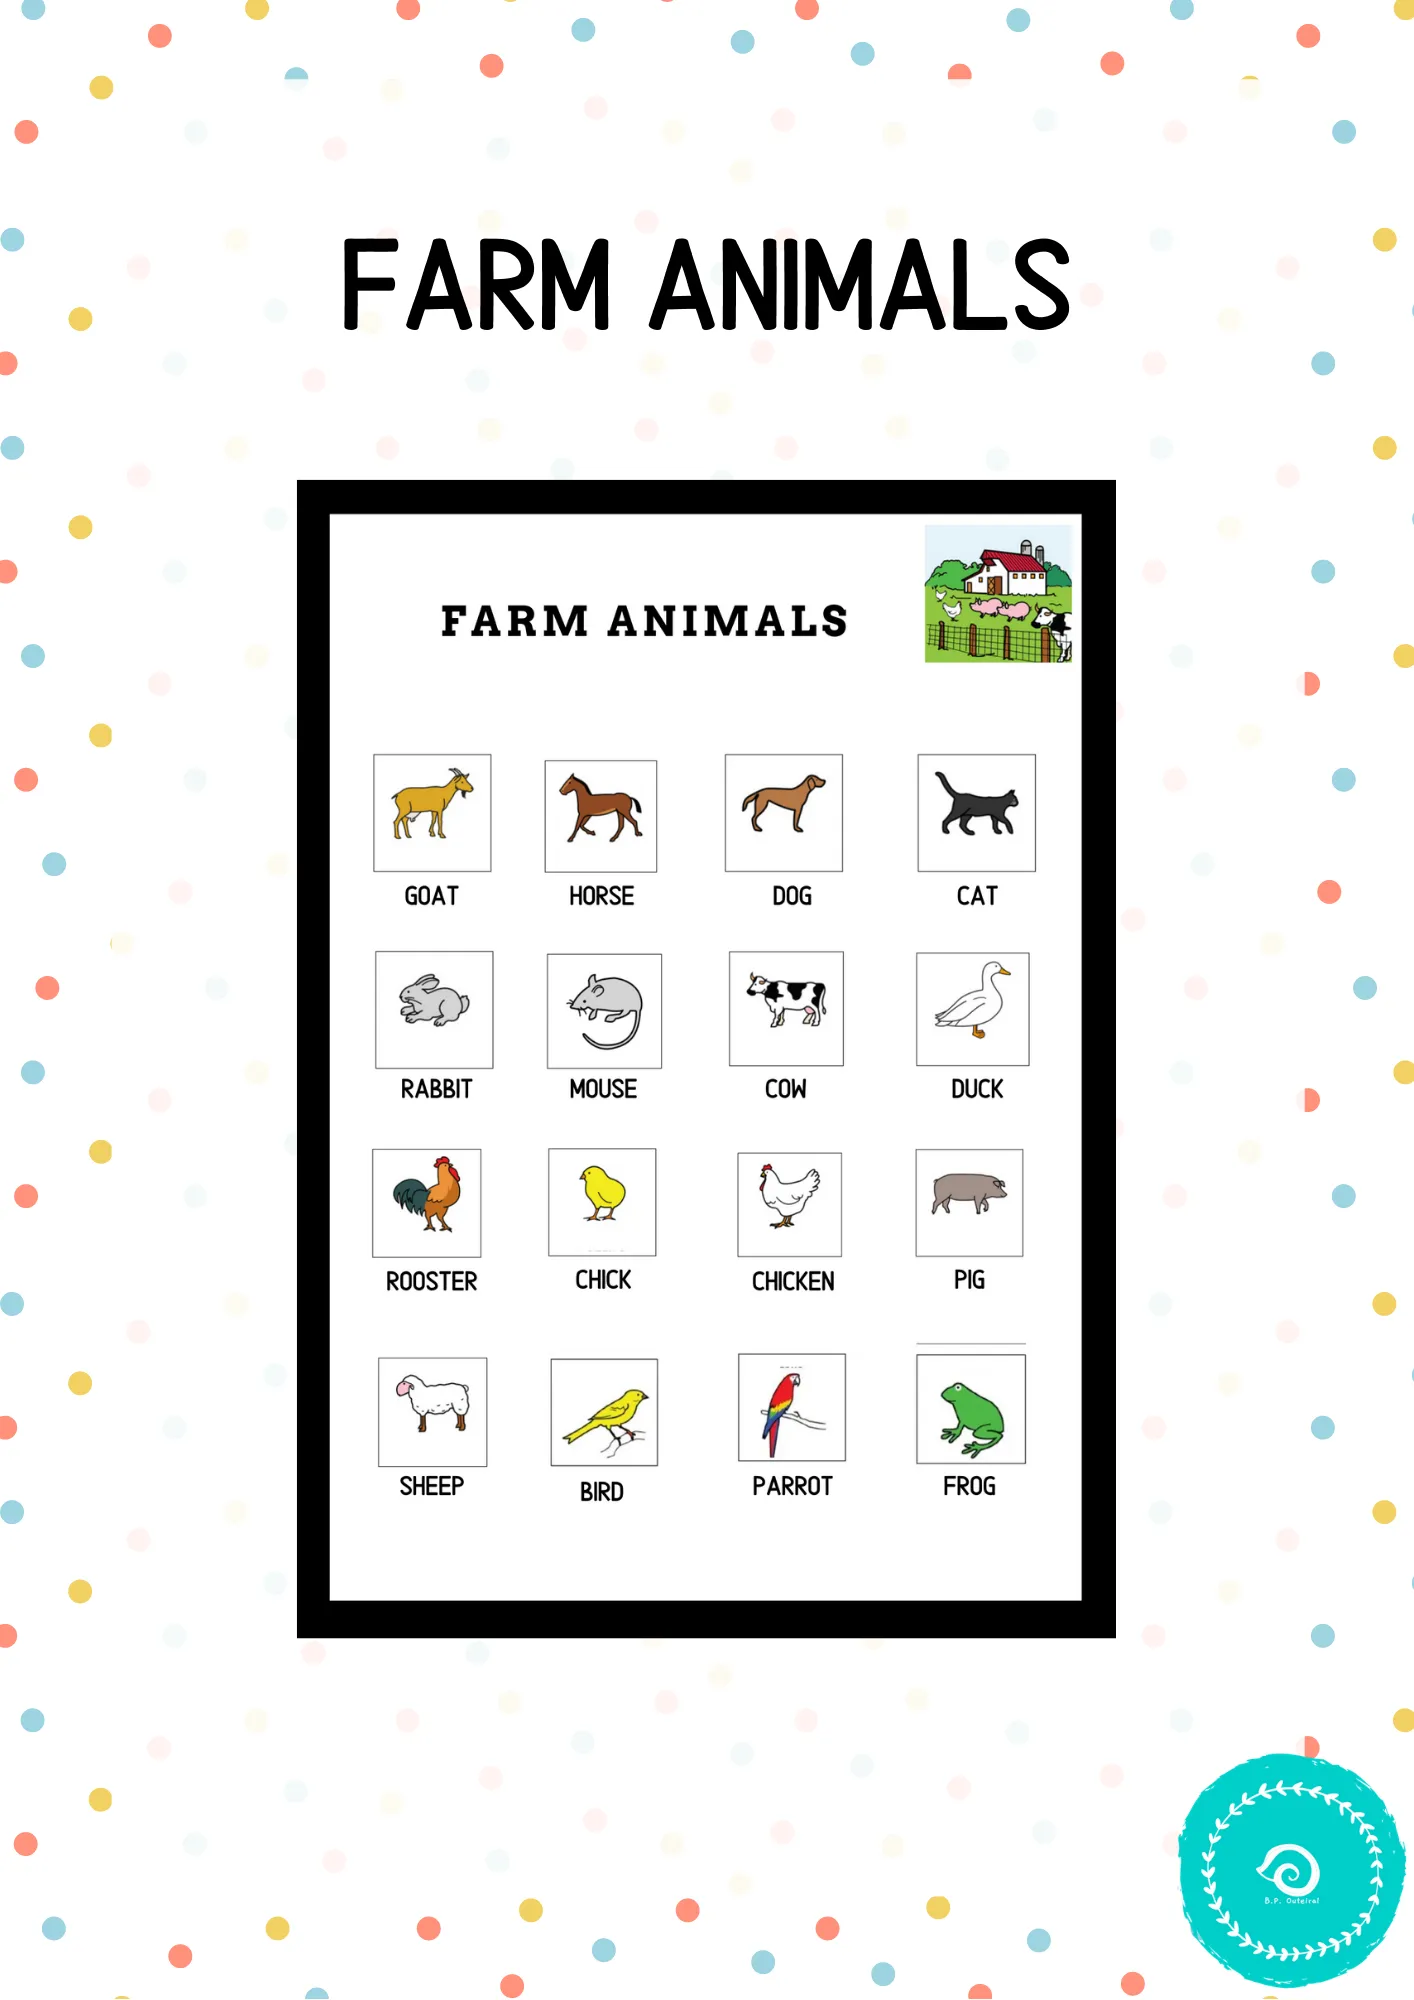 Farm animals (pictos)